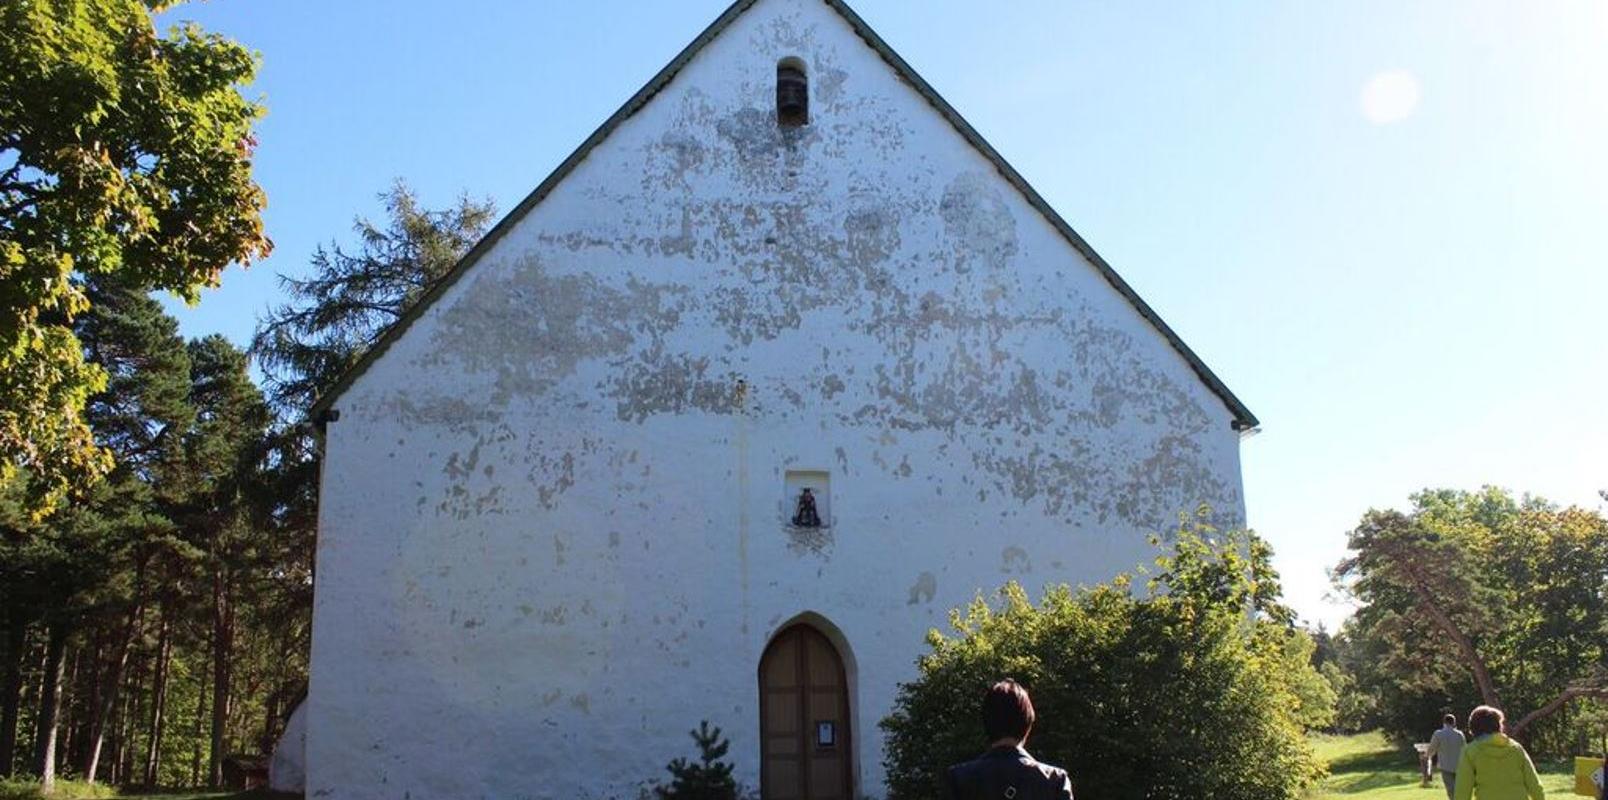 St Olav’s Church in Vormsi